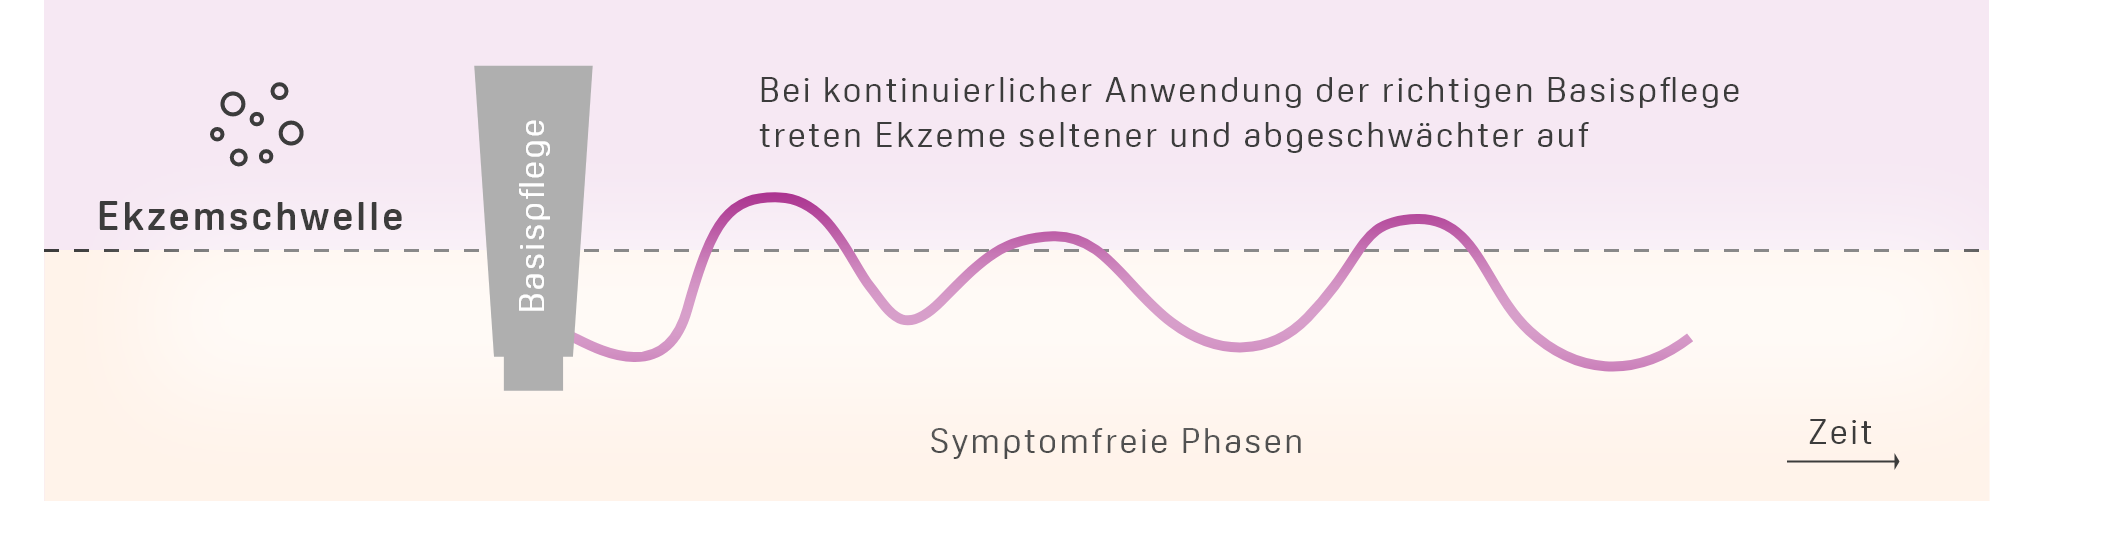 Infografik zeigt den harmloseren Verlauf einer Neurodermitis in Wellenform, wenn Creme zur Basispflege eingesetzt wird.